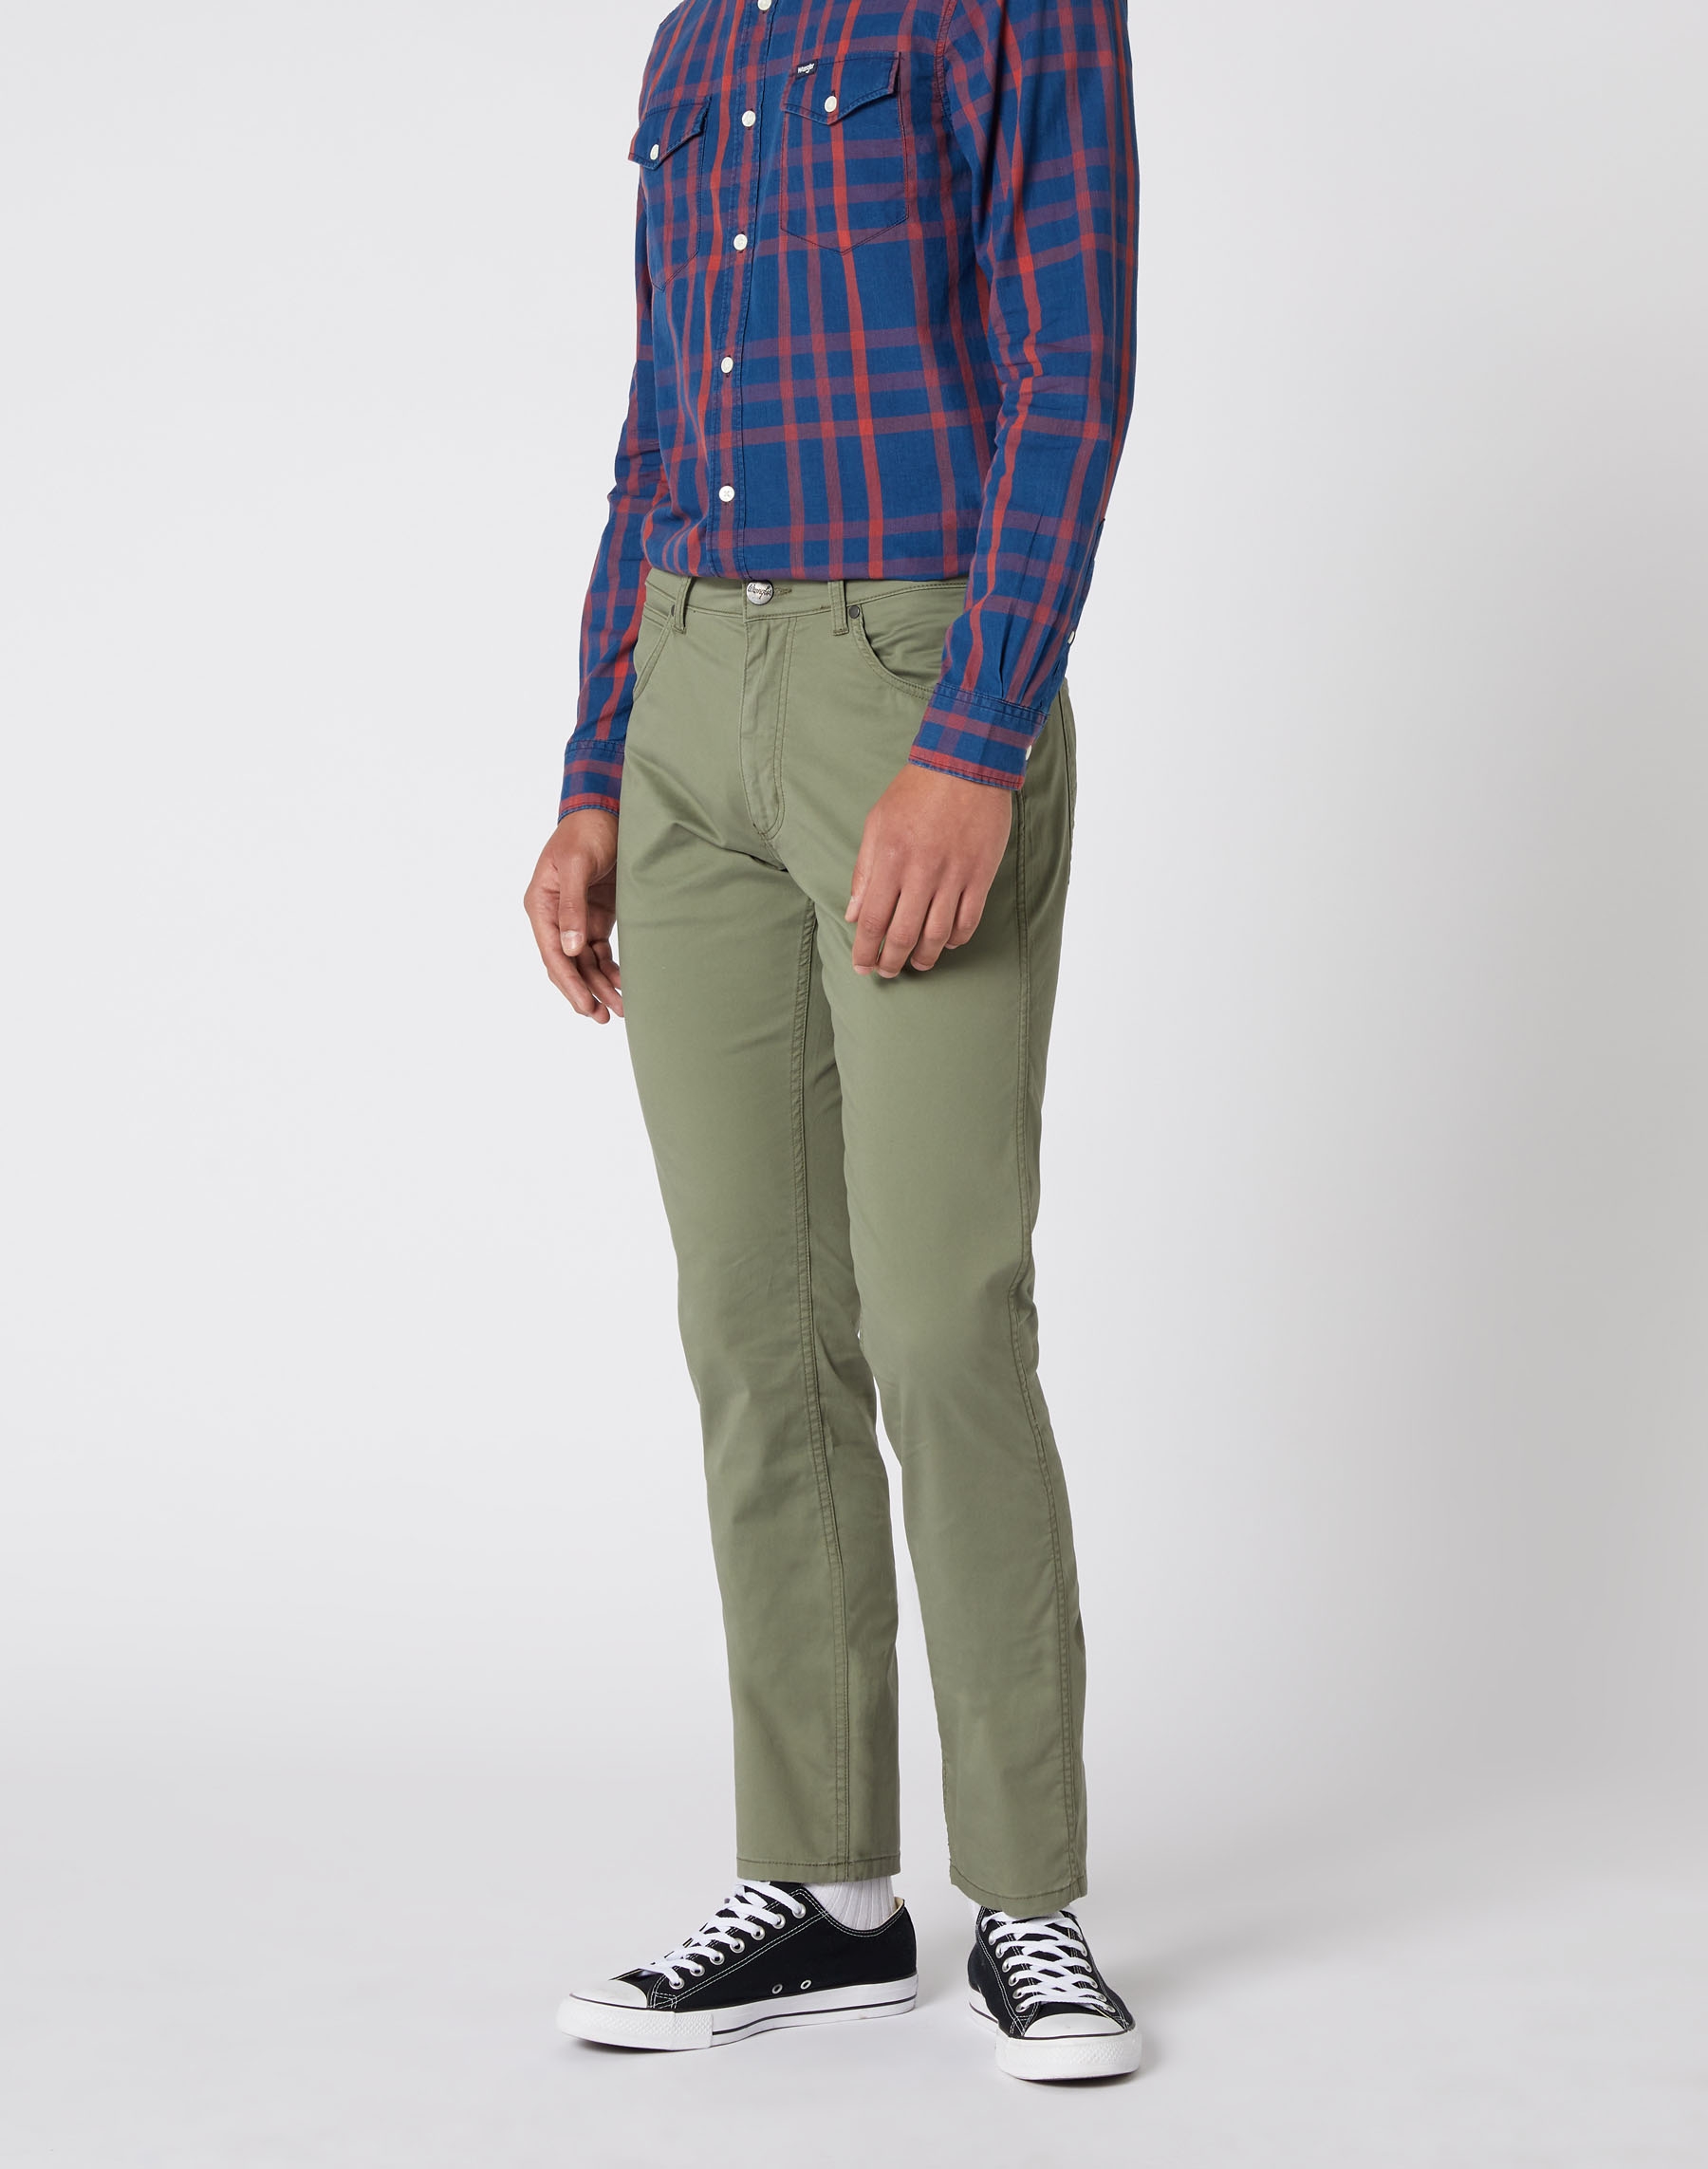 Wrangler Greensboro slim pantalons texans de gavardina d'home W15QWA275 caqui